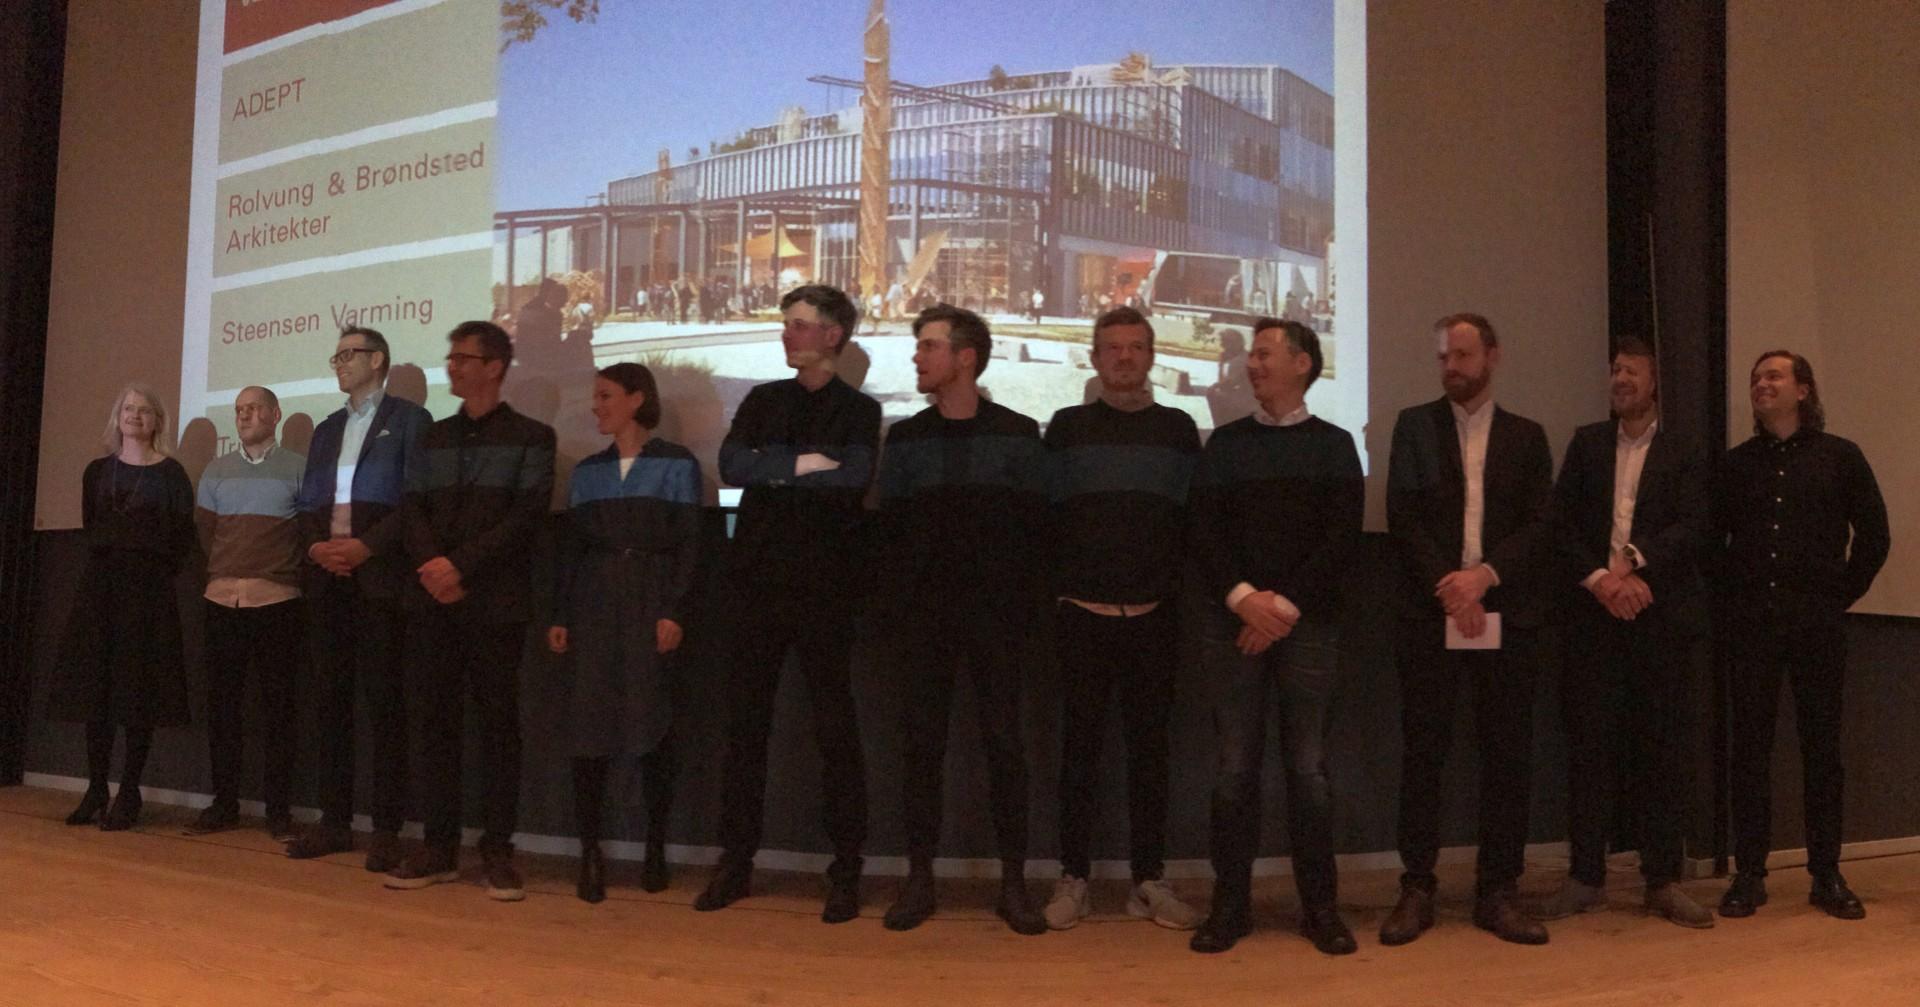 Vinderteamet bestående af Adept, Rolvung & Brøndsted Arkitekter, Tri-Consult, Steensen Varming samt Vargo Nielsen Palle. Foto: Kristian Troelsen.